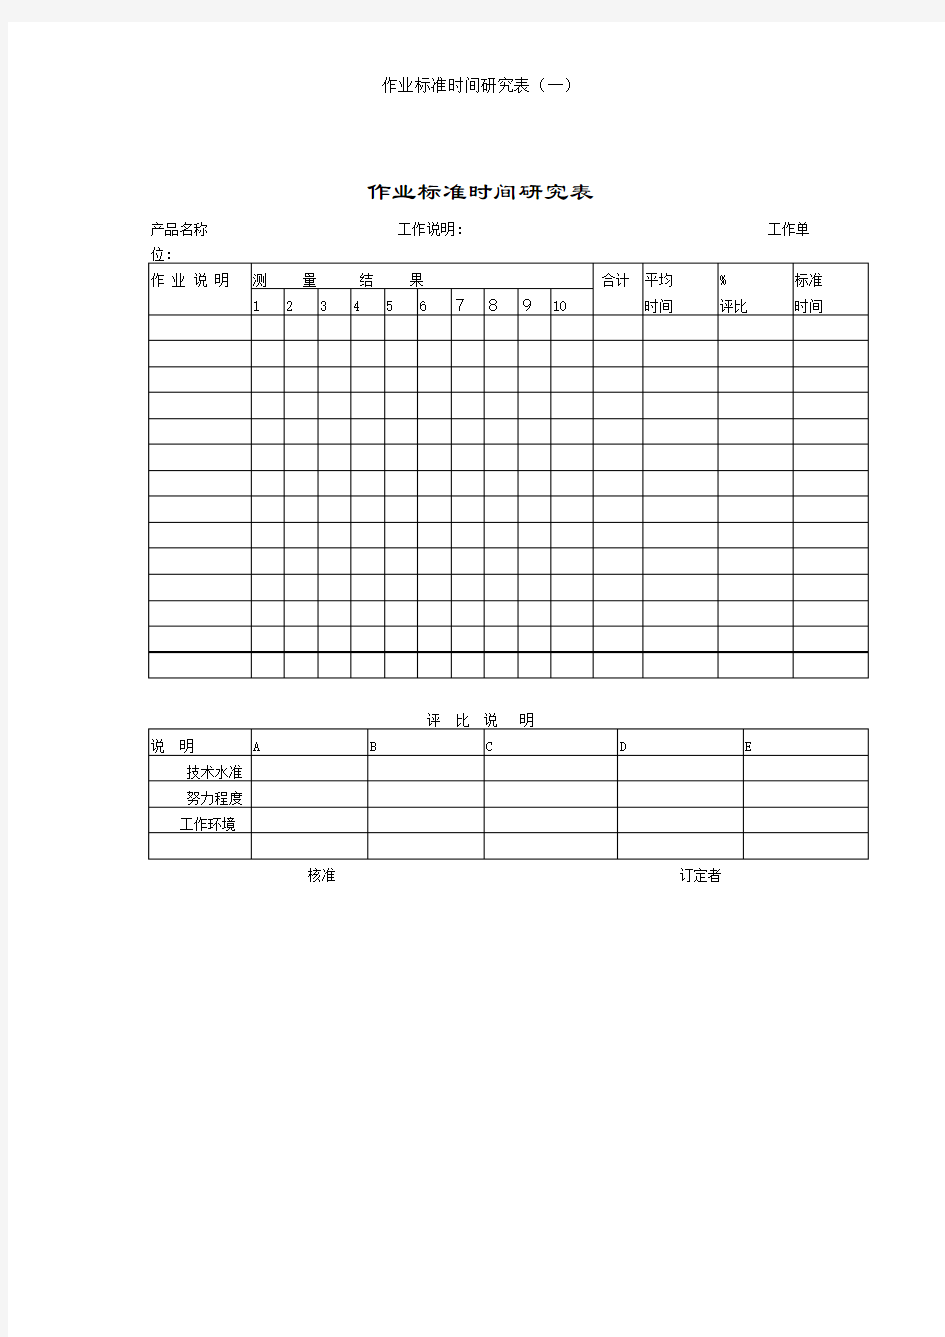 作业标准时间研究表(一)